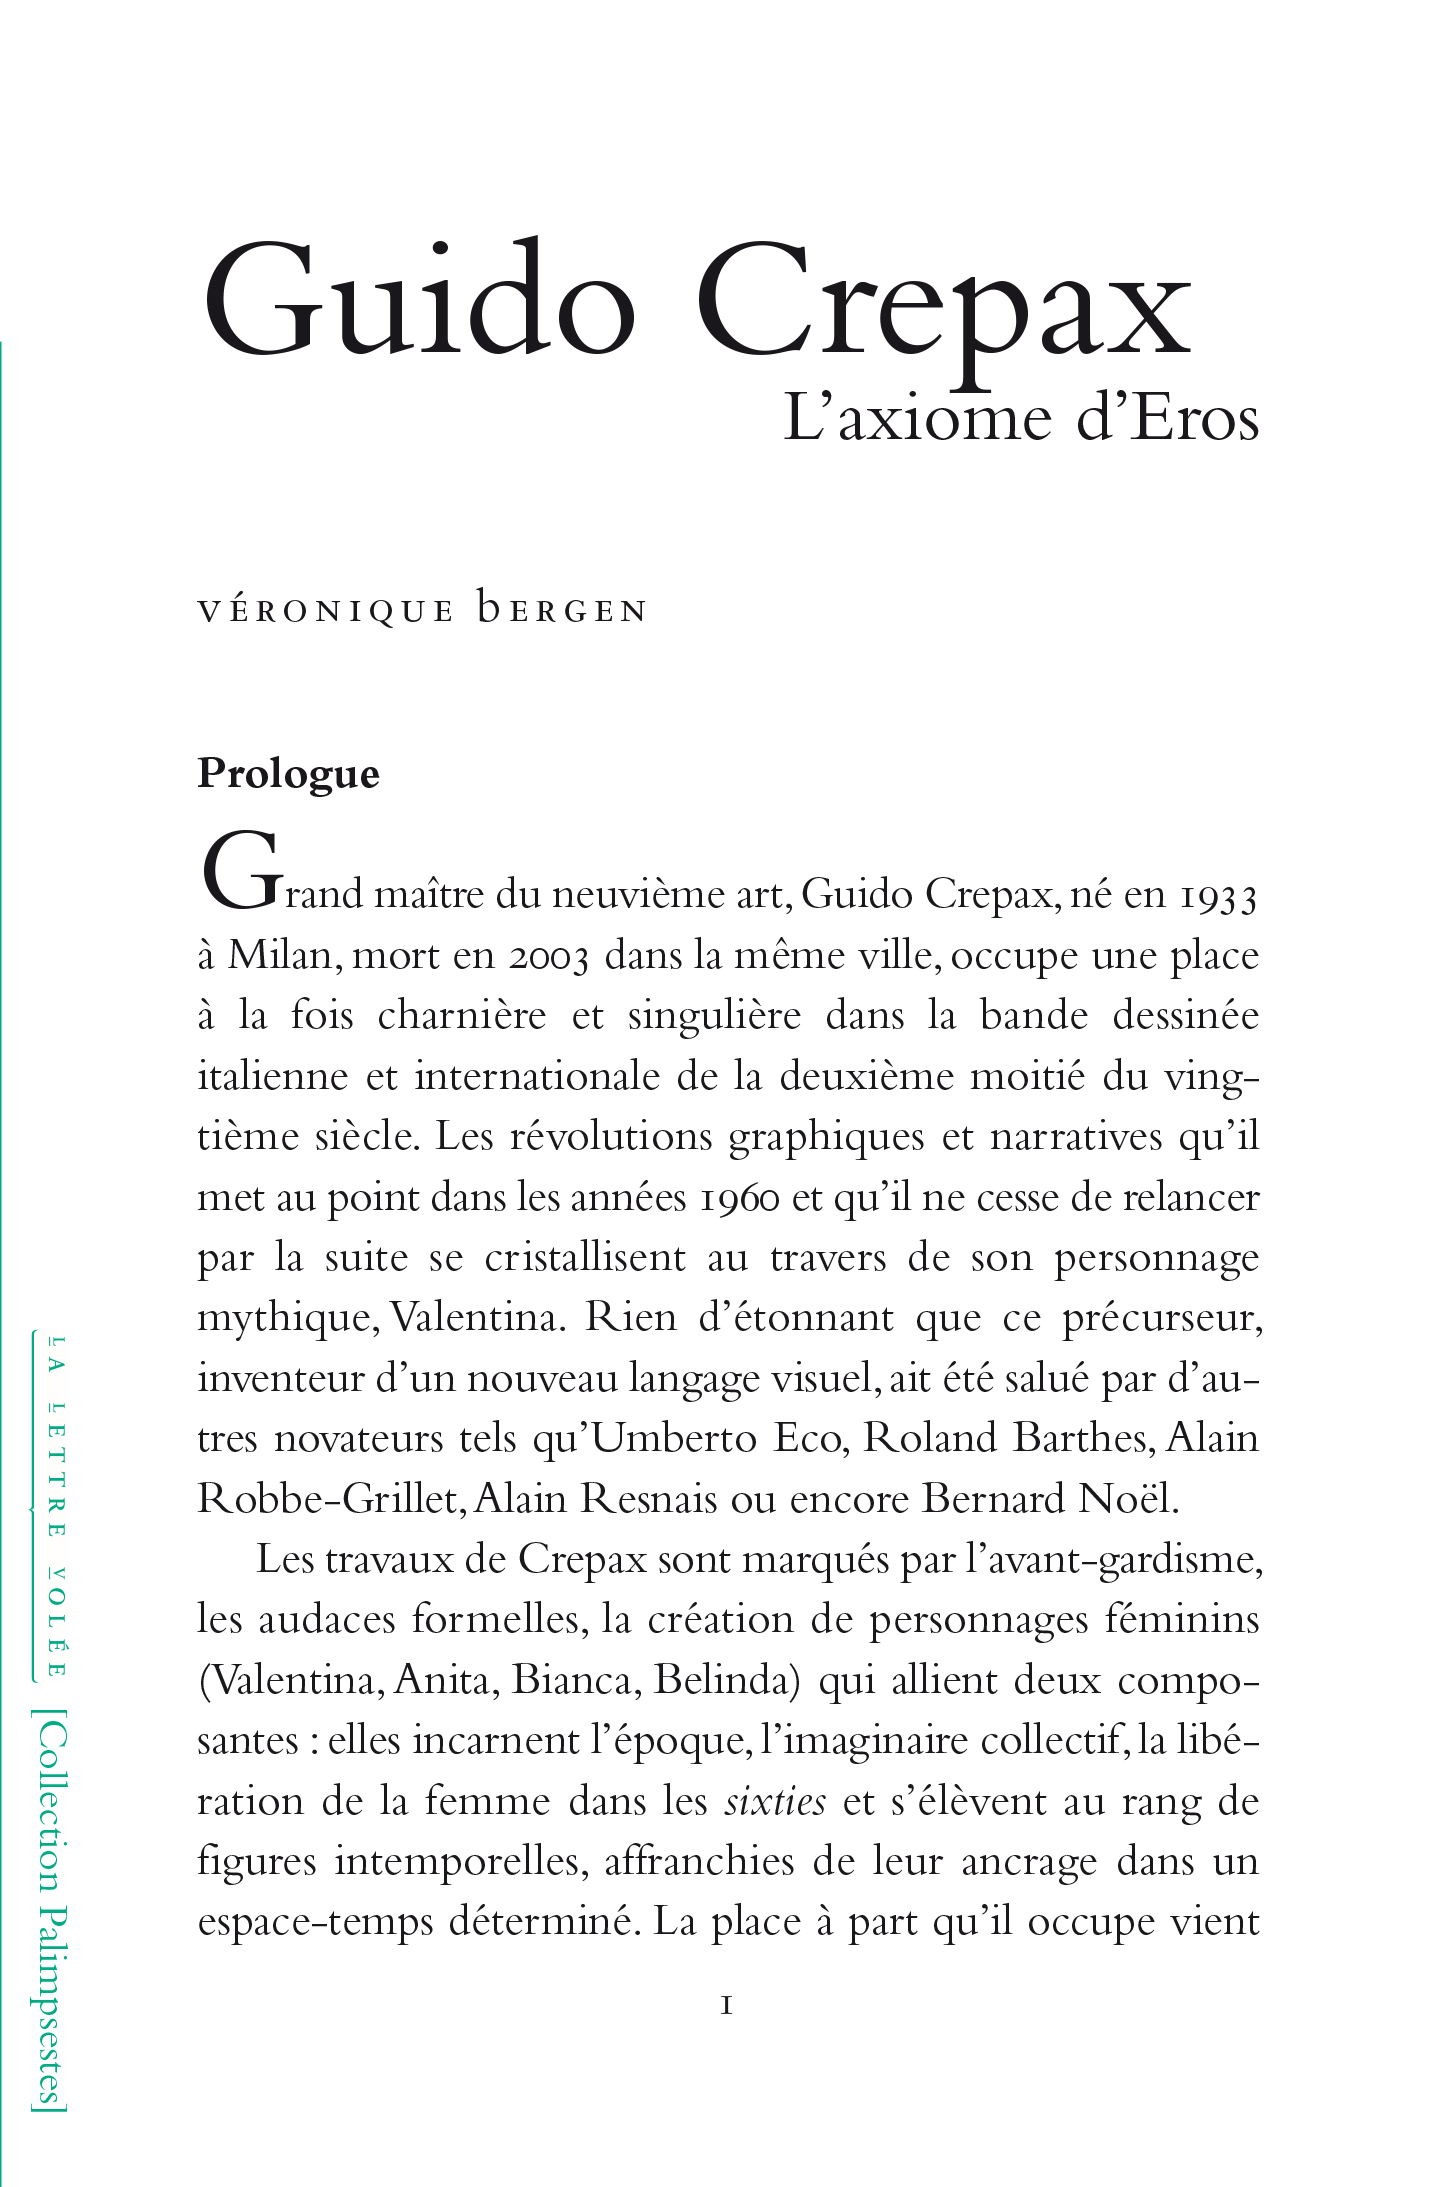 Guido Crepax : L’axiome d’Eros